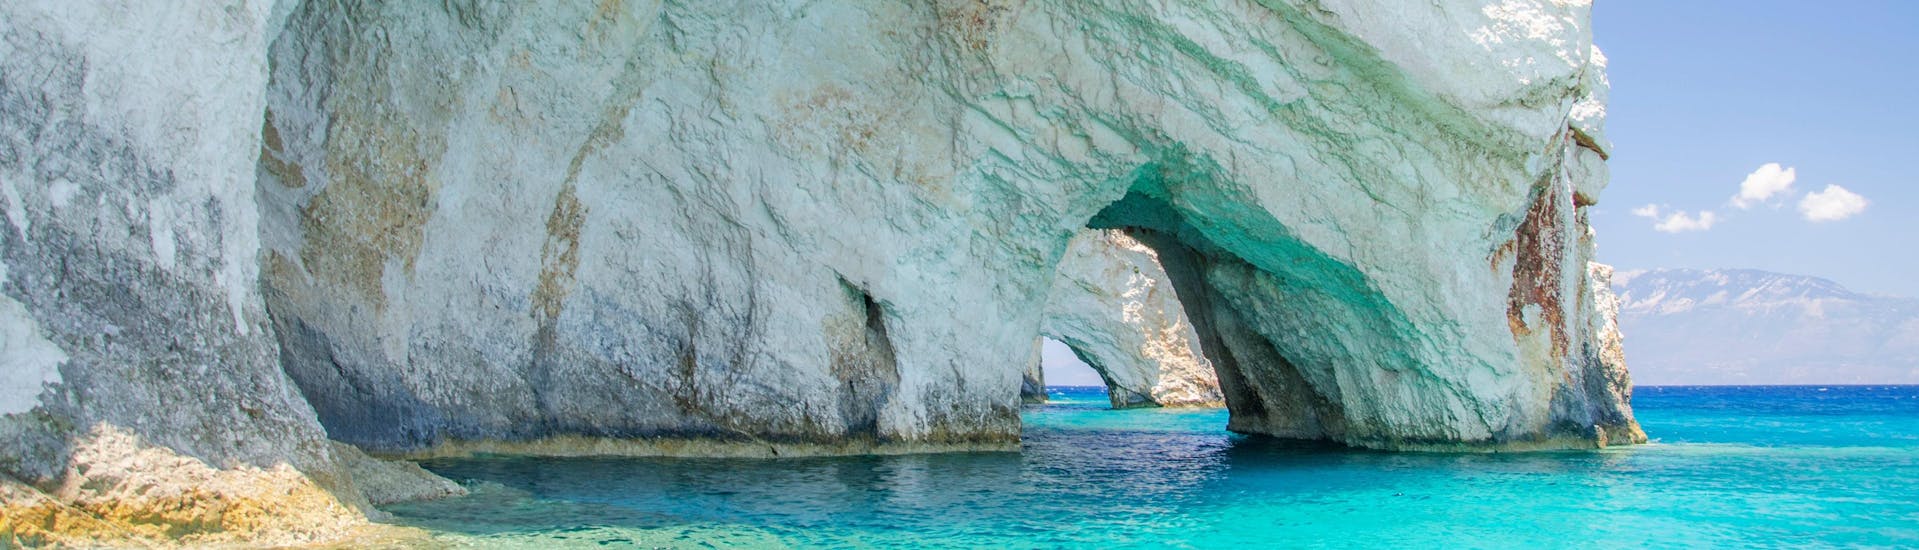 Le meravigliose Grotte Azzurre, una destinazione ambita per le gite in barca a Zakynthos.